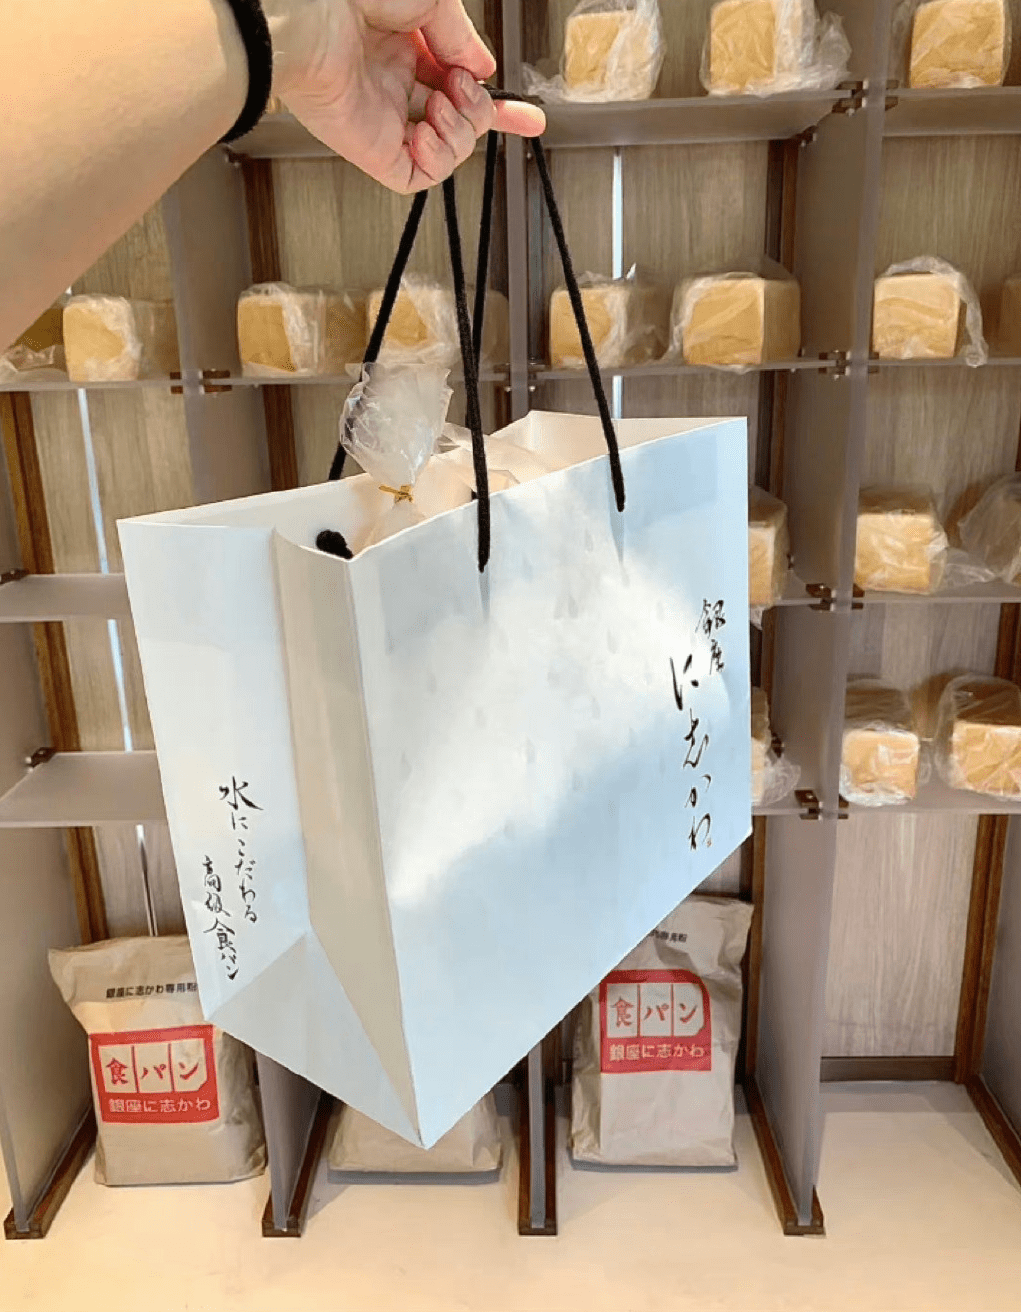 该店为上海新开业的面包店，卖的是号称日本排名第二的面包。